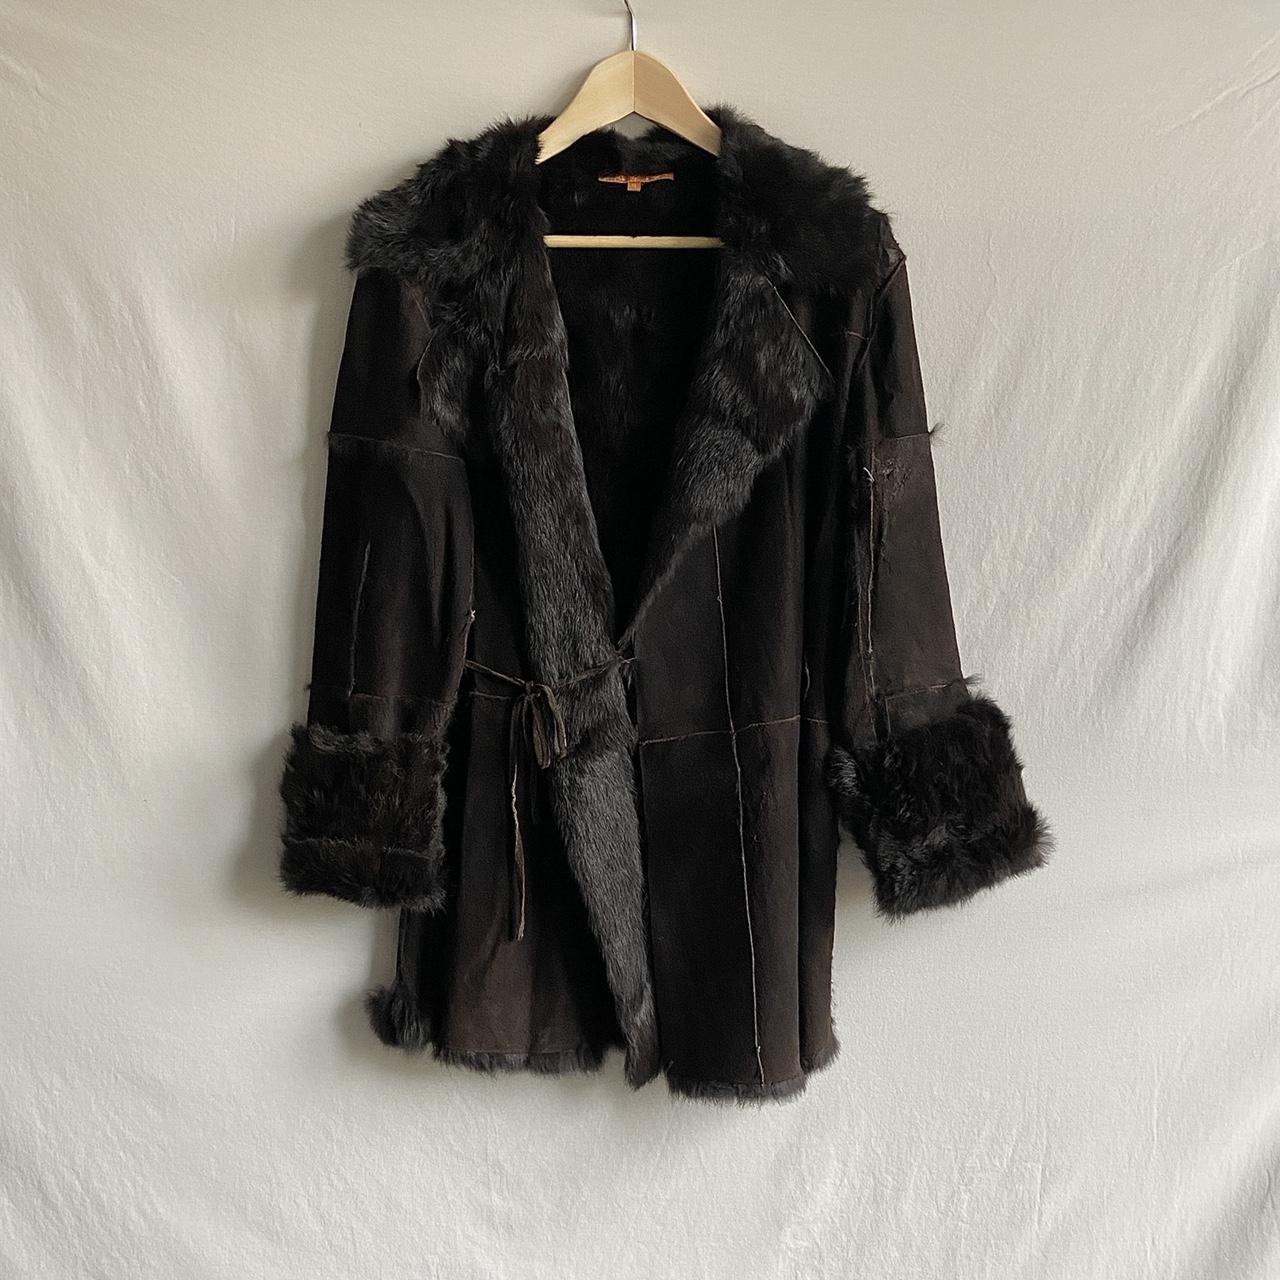 Vintage Rabbit fur coat. 100% fur. Fits like... - Depop